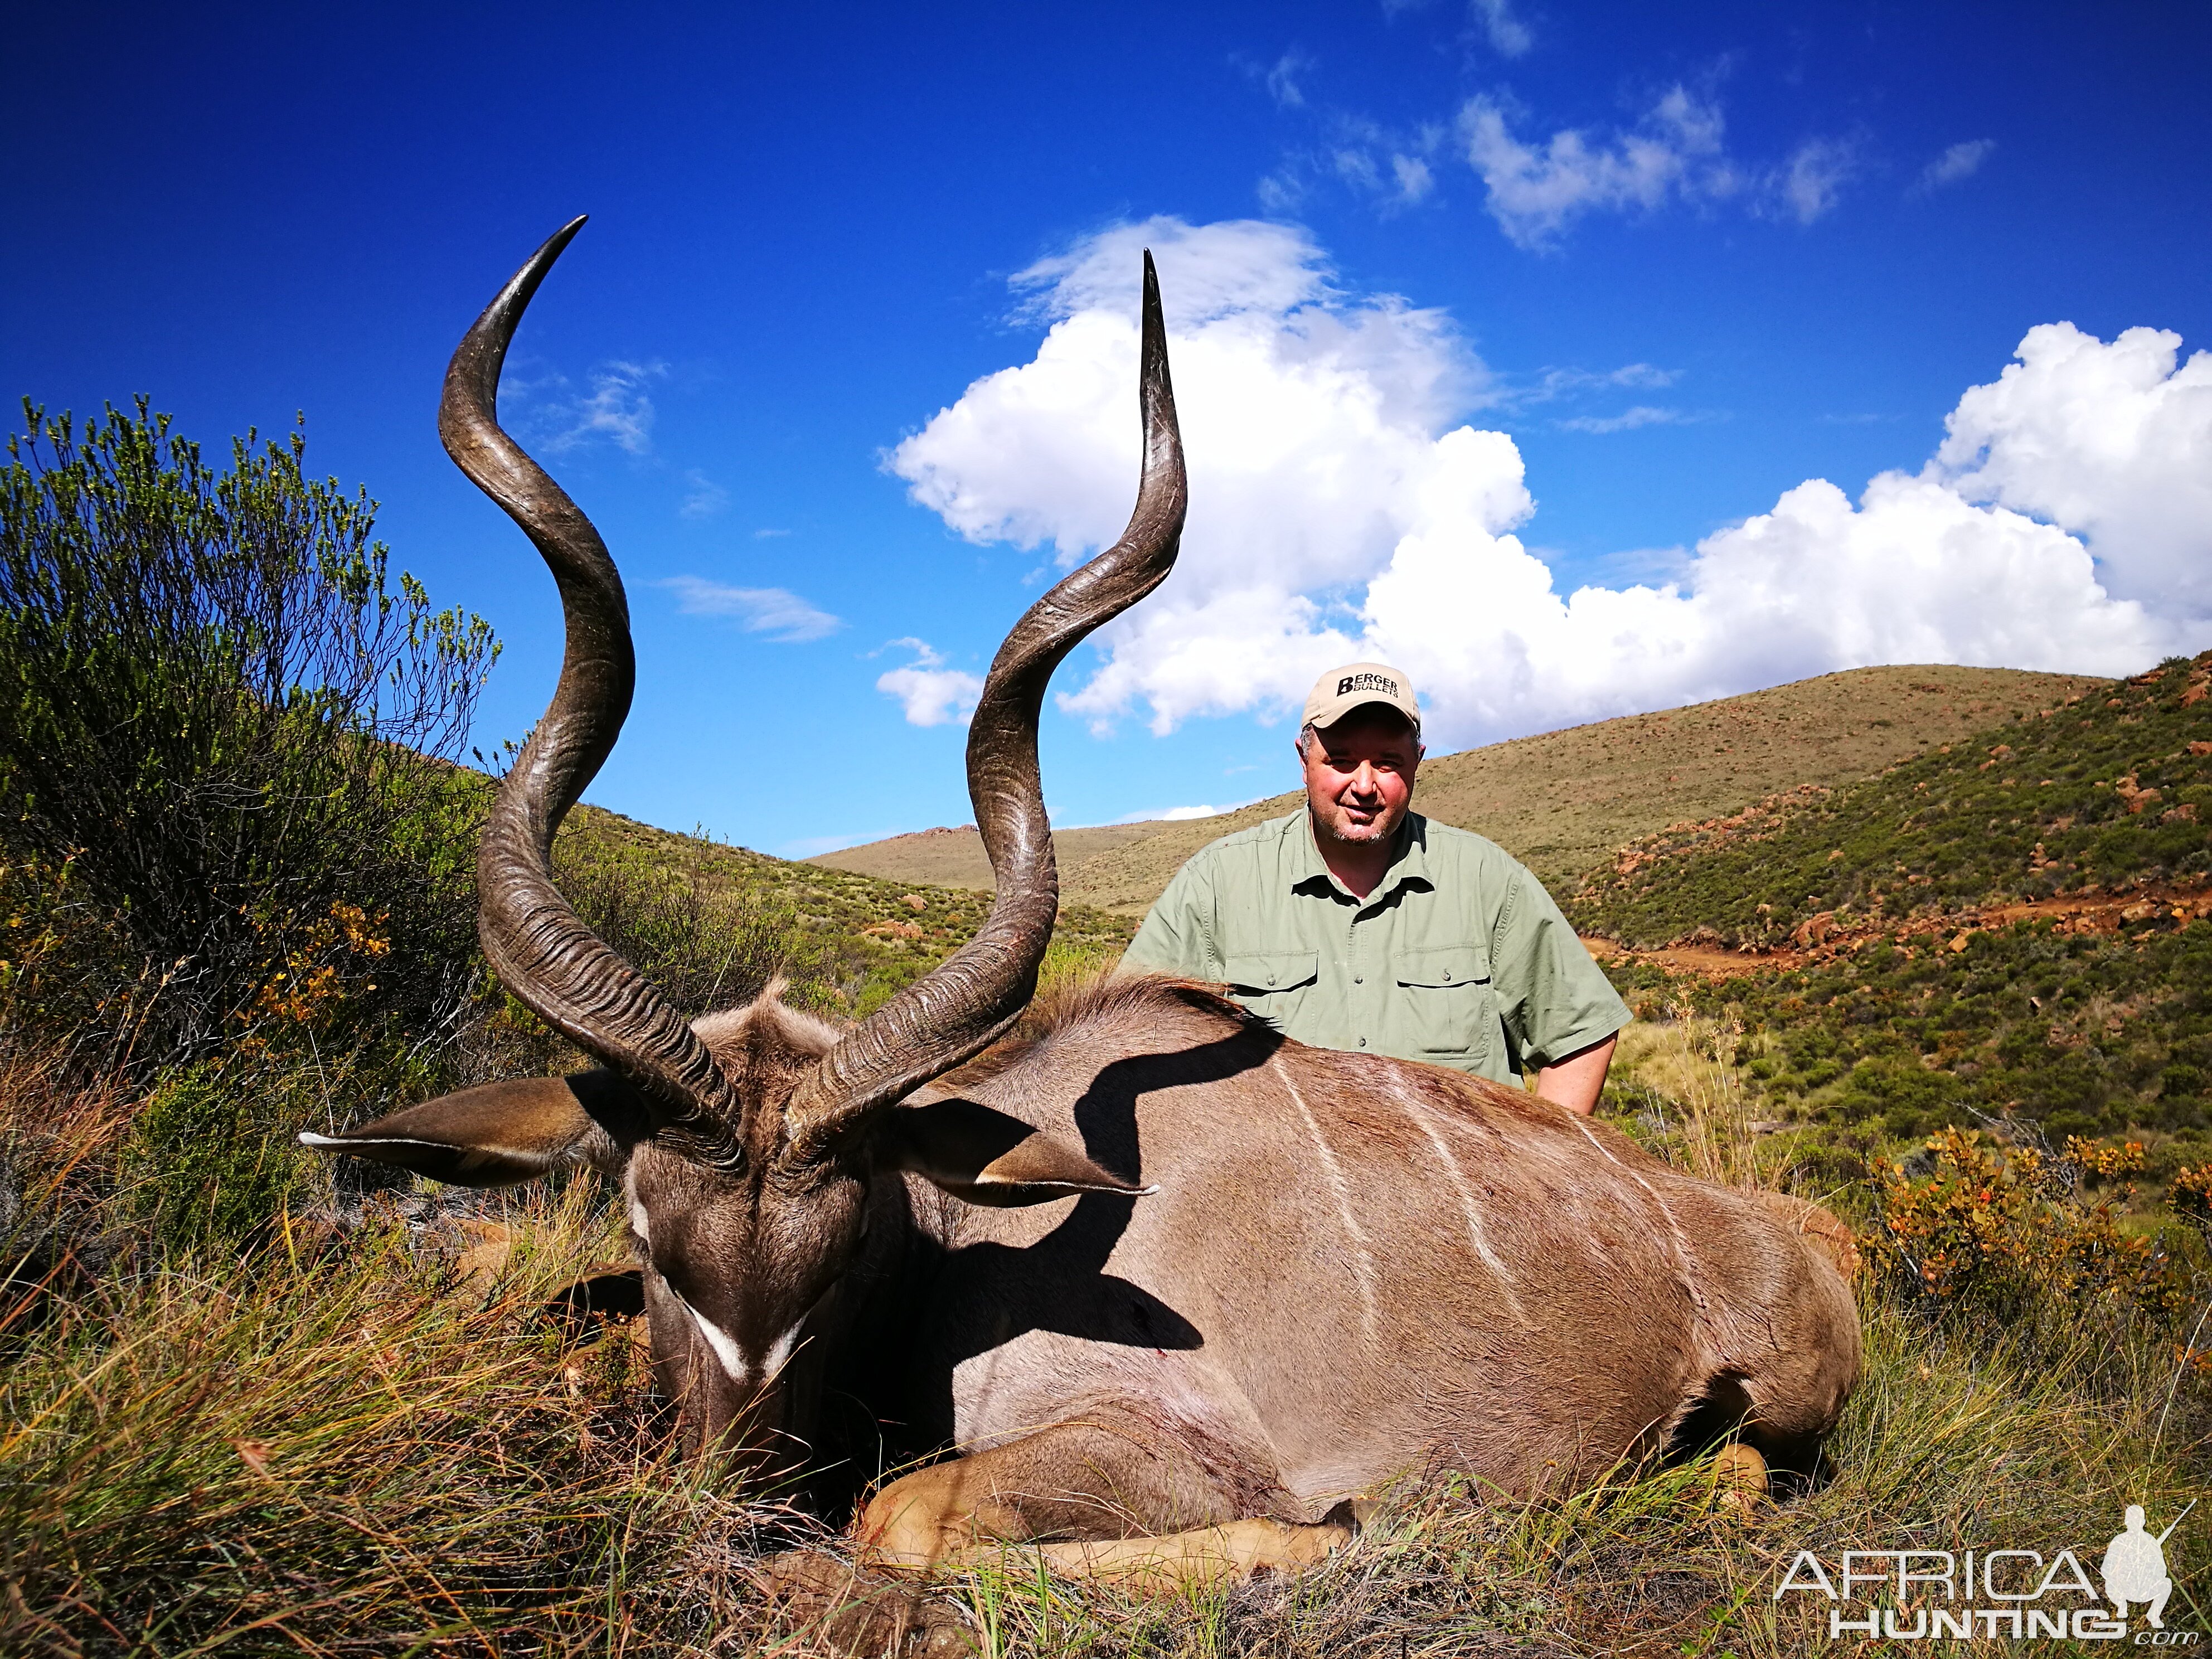 south africa safari hunting